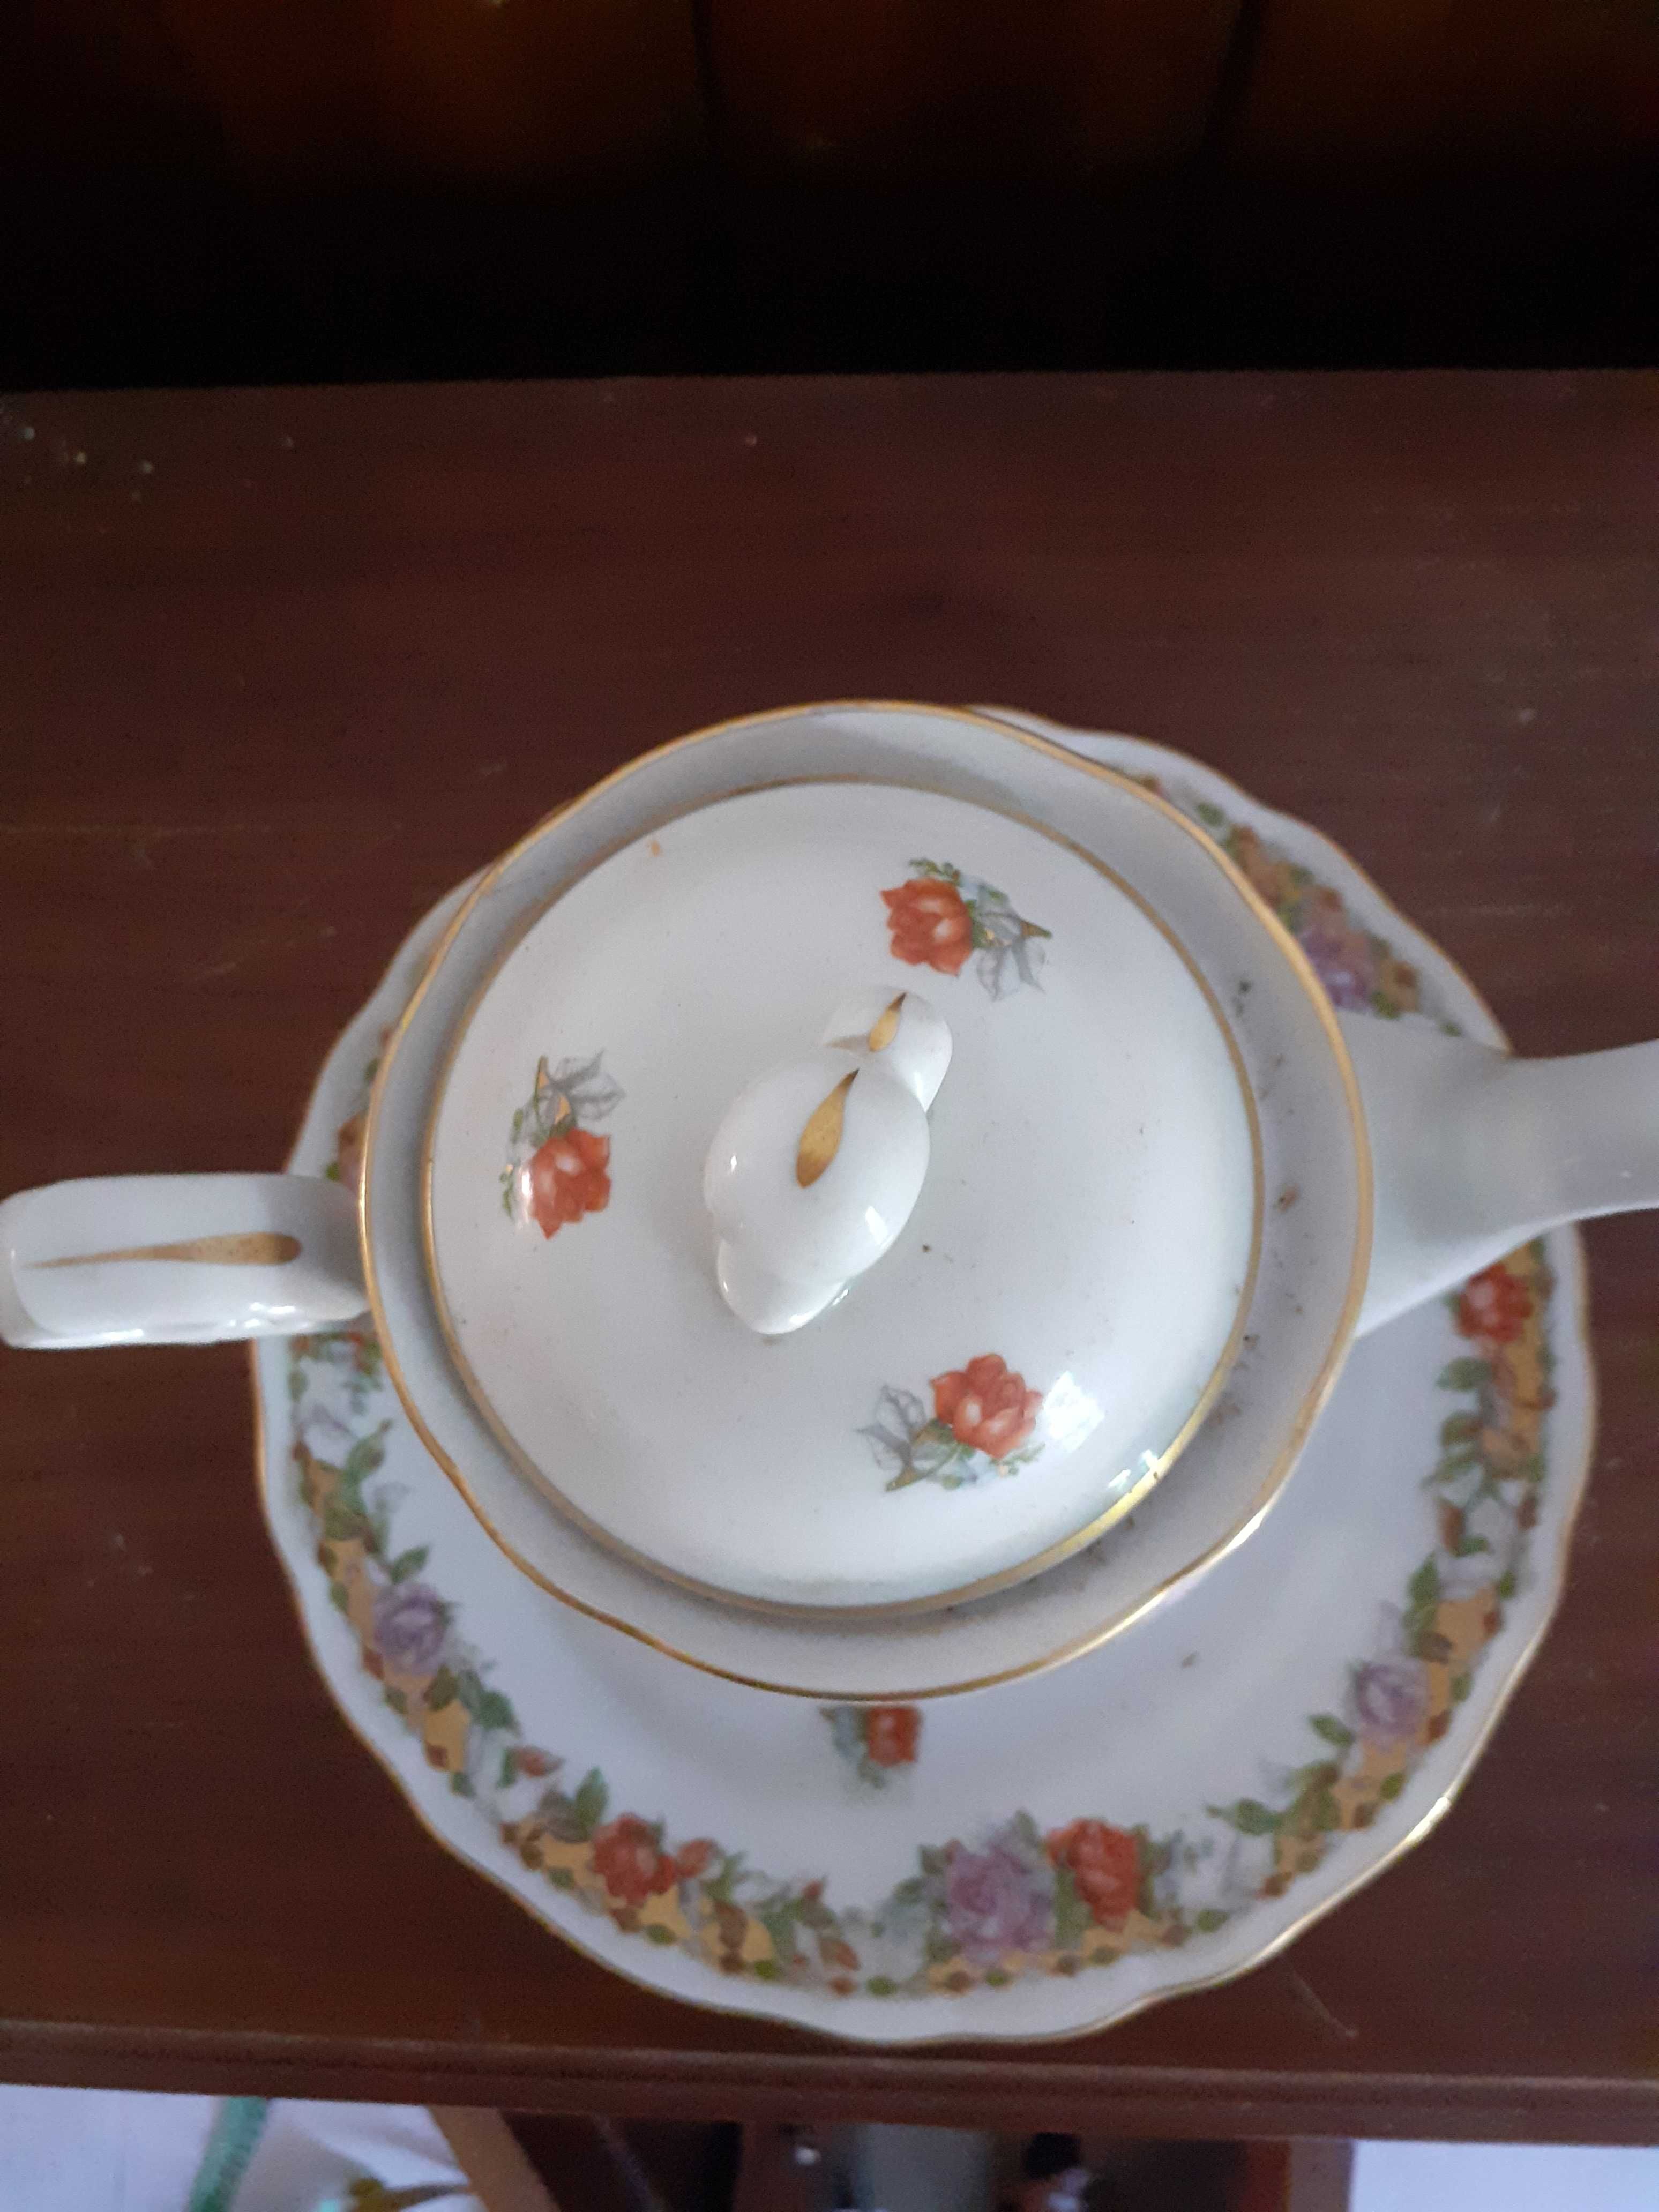 Bule de chá com prato - Limoges